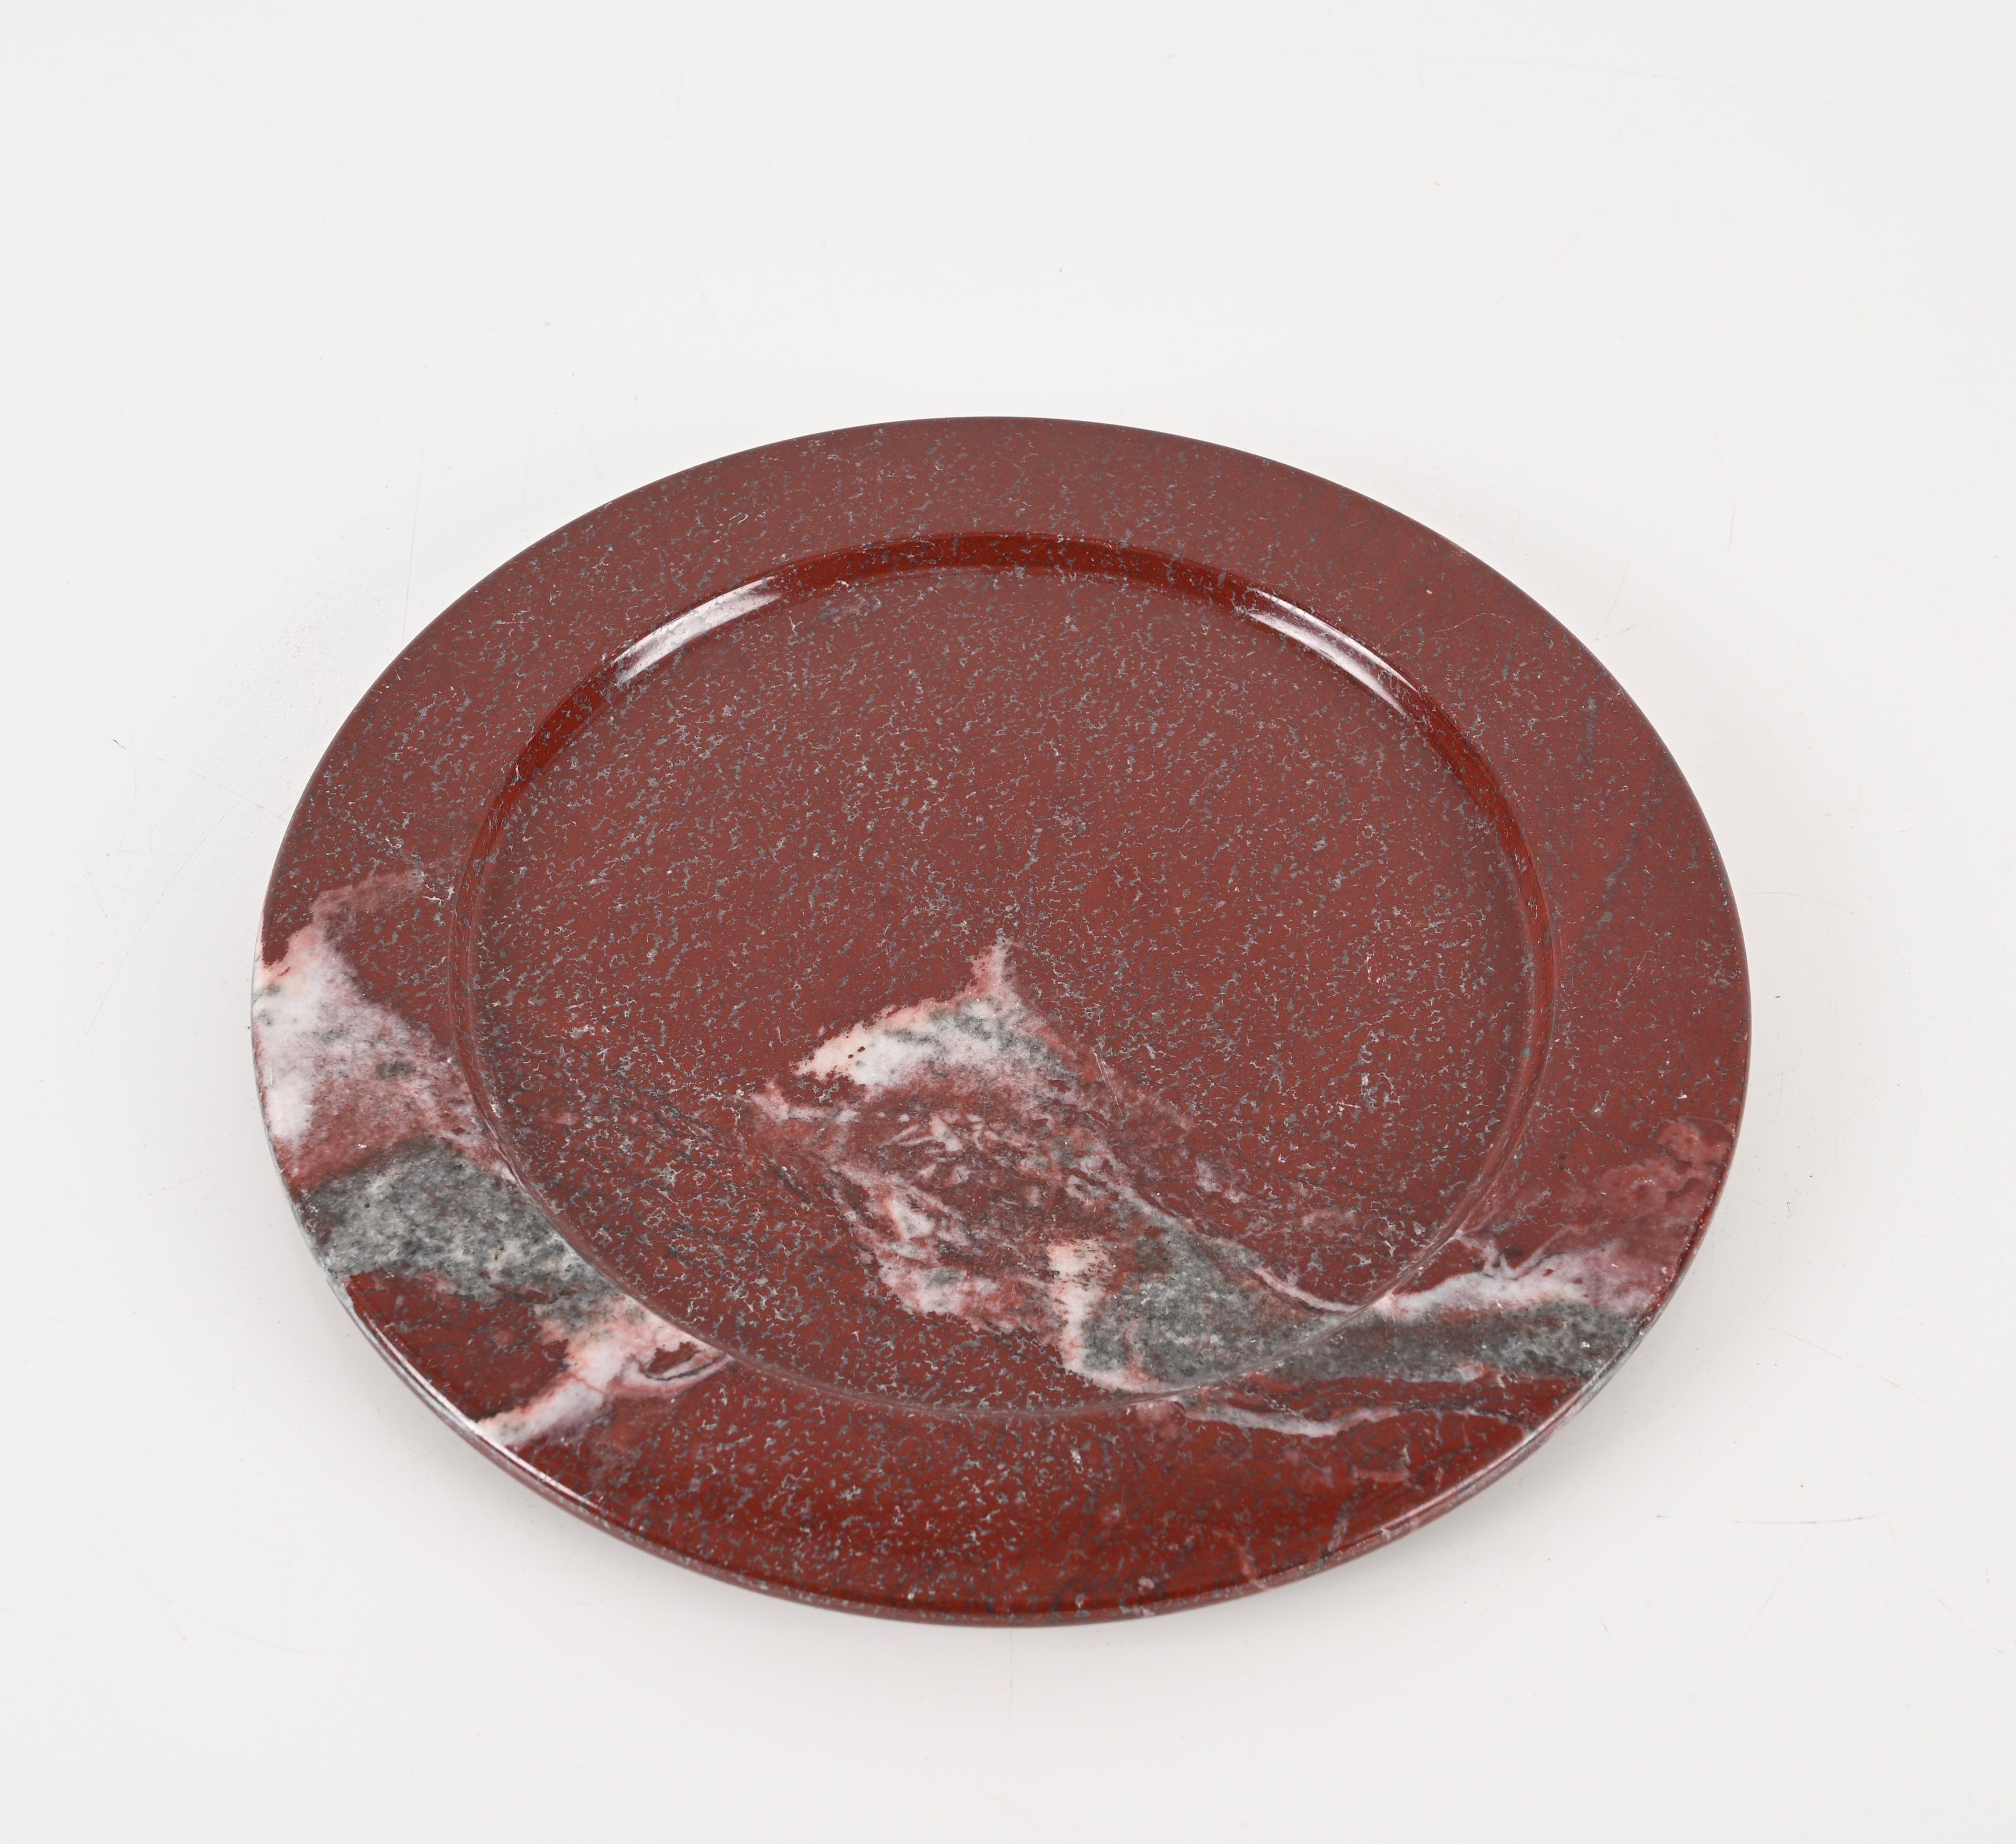 Prächtige Platte aus massivem dunkelrotem Porphyr-Marmor, hergestellt in Italien in den 1950er Jahren.

Die Schlichtheit dieser Platte unterstreicht die Qualität des verwendeten Marmors, die erstaunlich ist. Im alten Rom wurde der Phorphyr-Marmor in